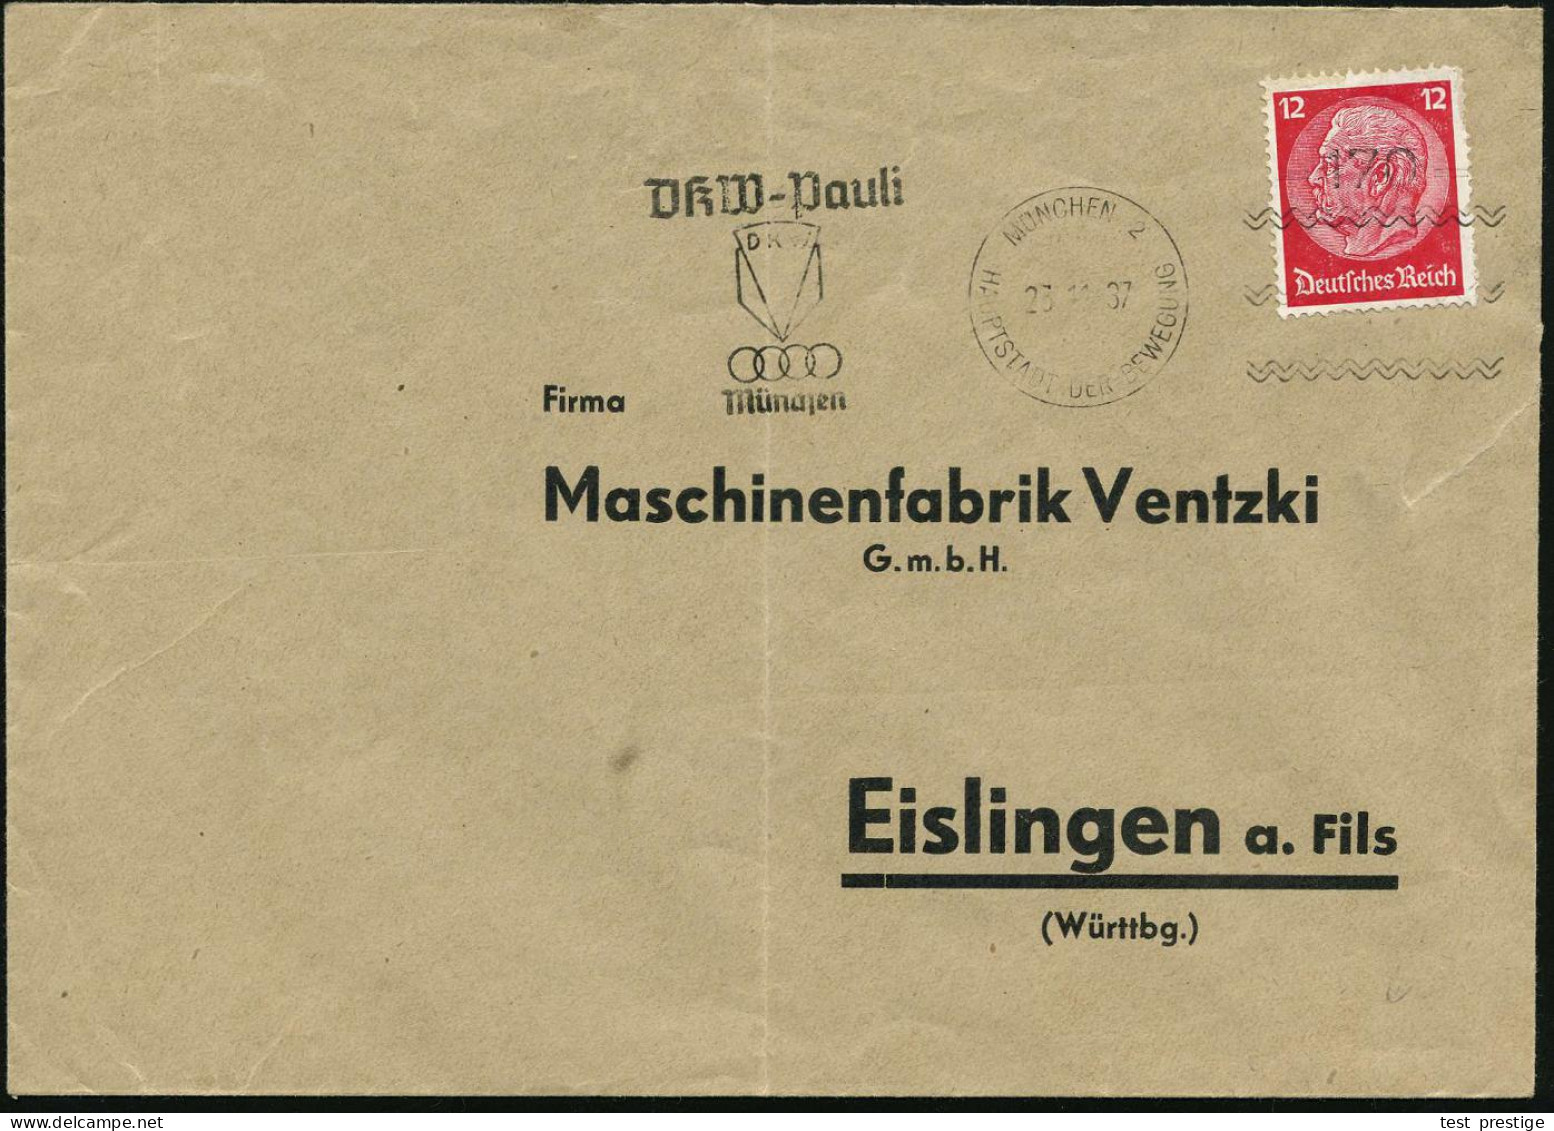 MÜNCHEN 2/ HDB/ =170=/ DKW-Pauli.. 1937 (25.11.) seltener Freimarkenstempel = Frankierapparat zur Vorausentwertung utoma